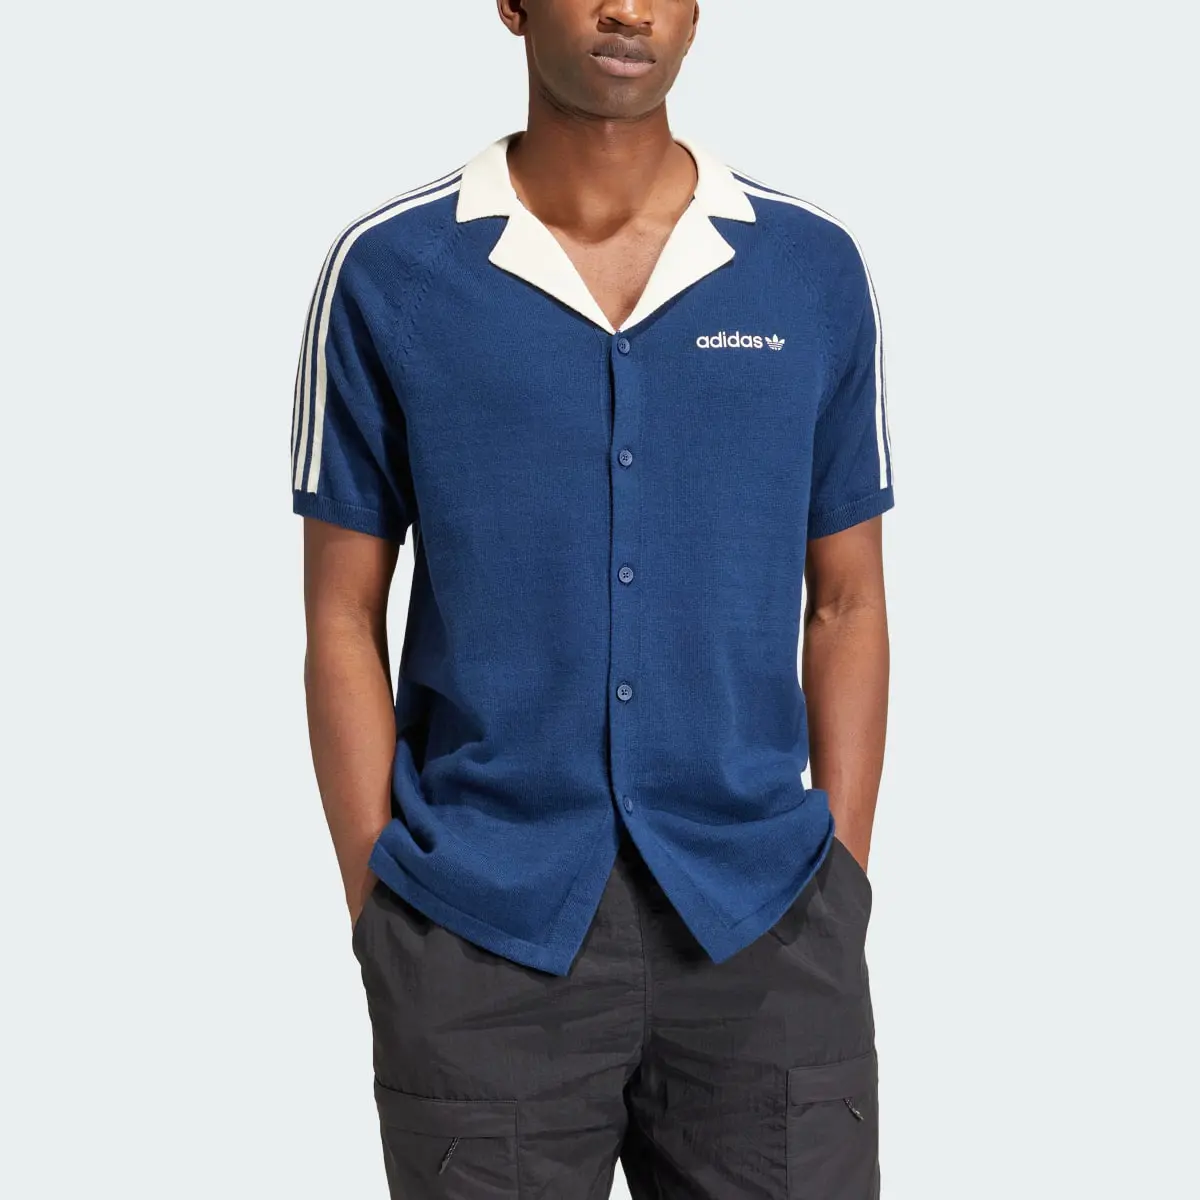 Adidas Premium Knitted Shirt. 1